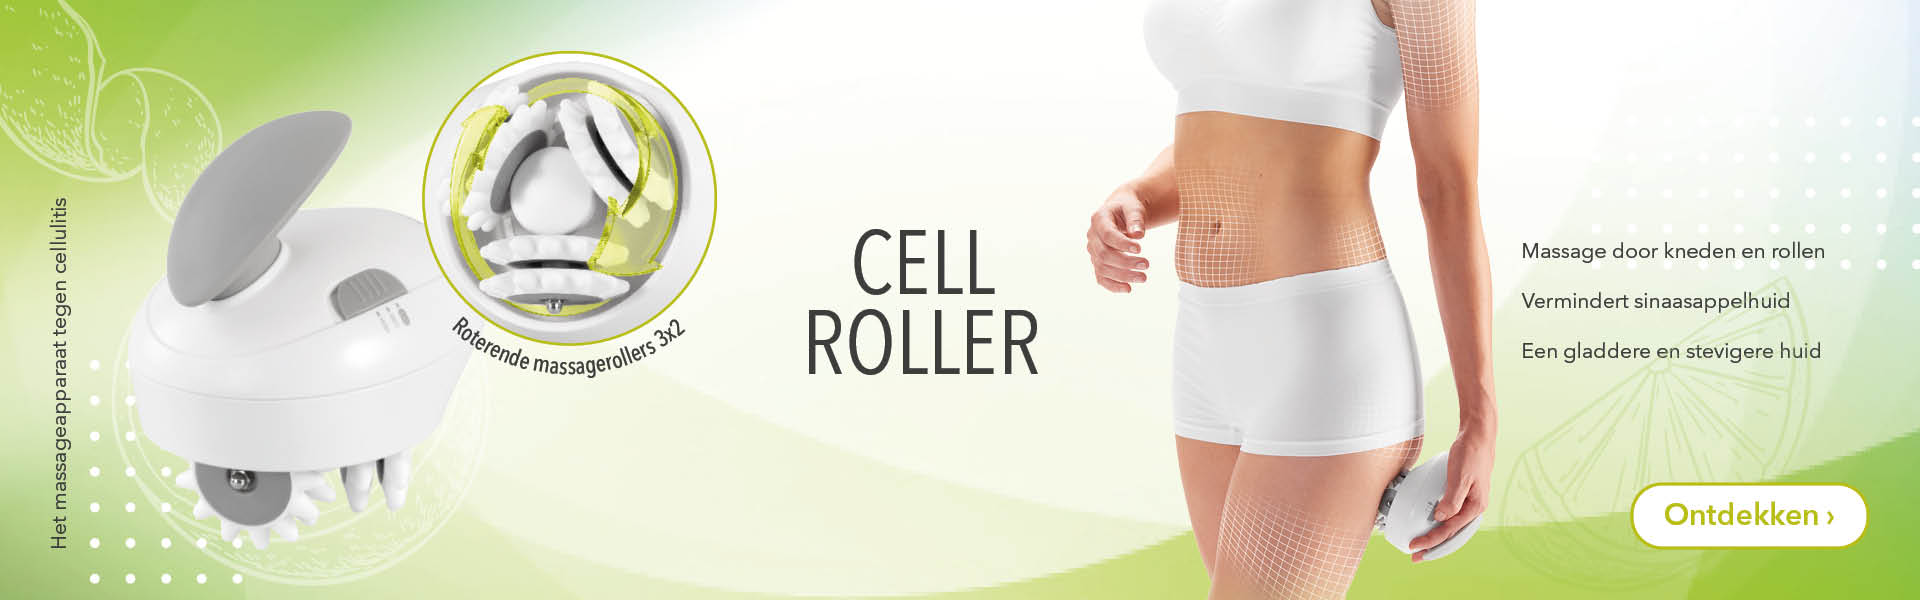 cell-roller